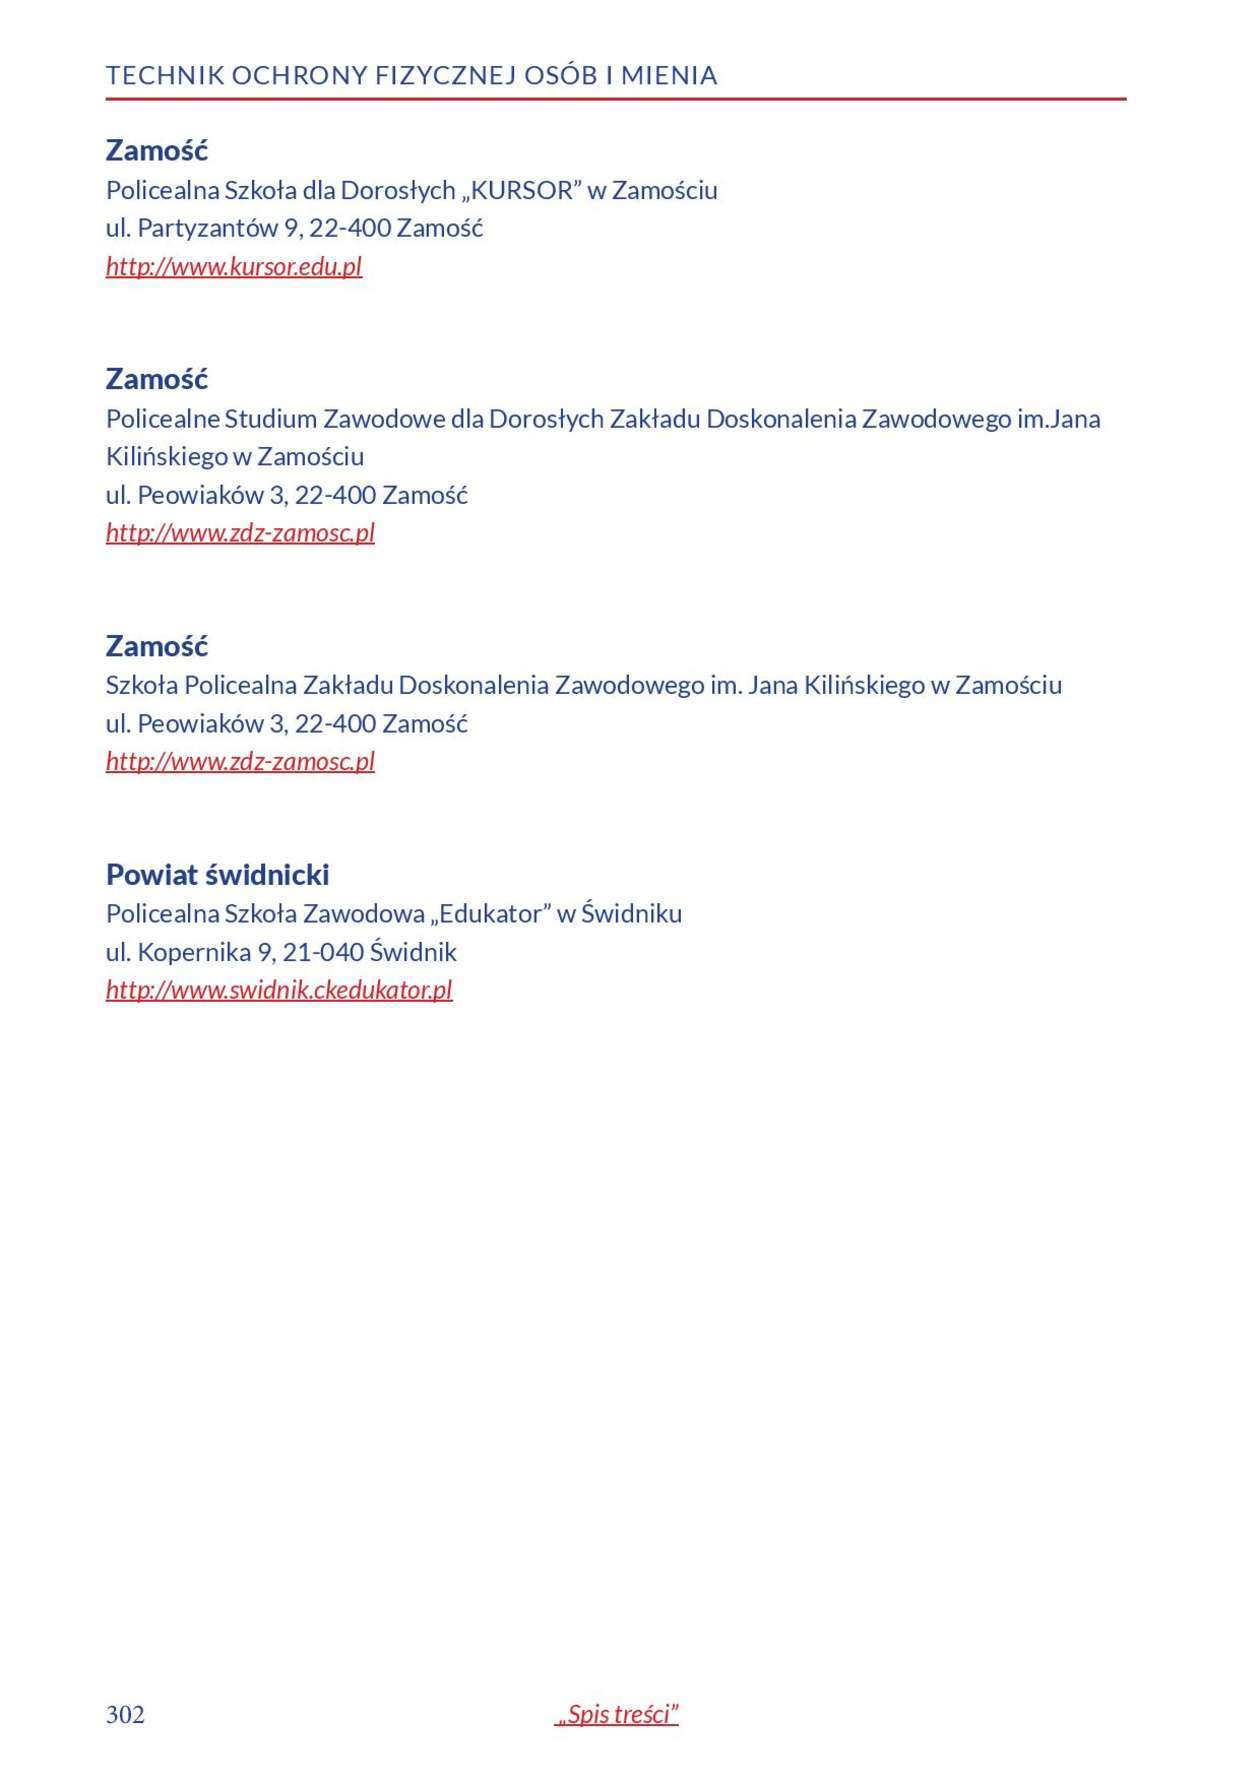  Informator o zawodach 2018/2019 w woj. lubelskim. Część 2 (zdjęcie 103) - Autor: Kuratorium Oświaty w Lublinie